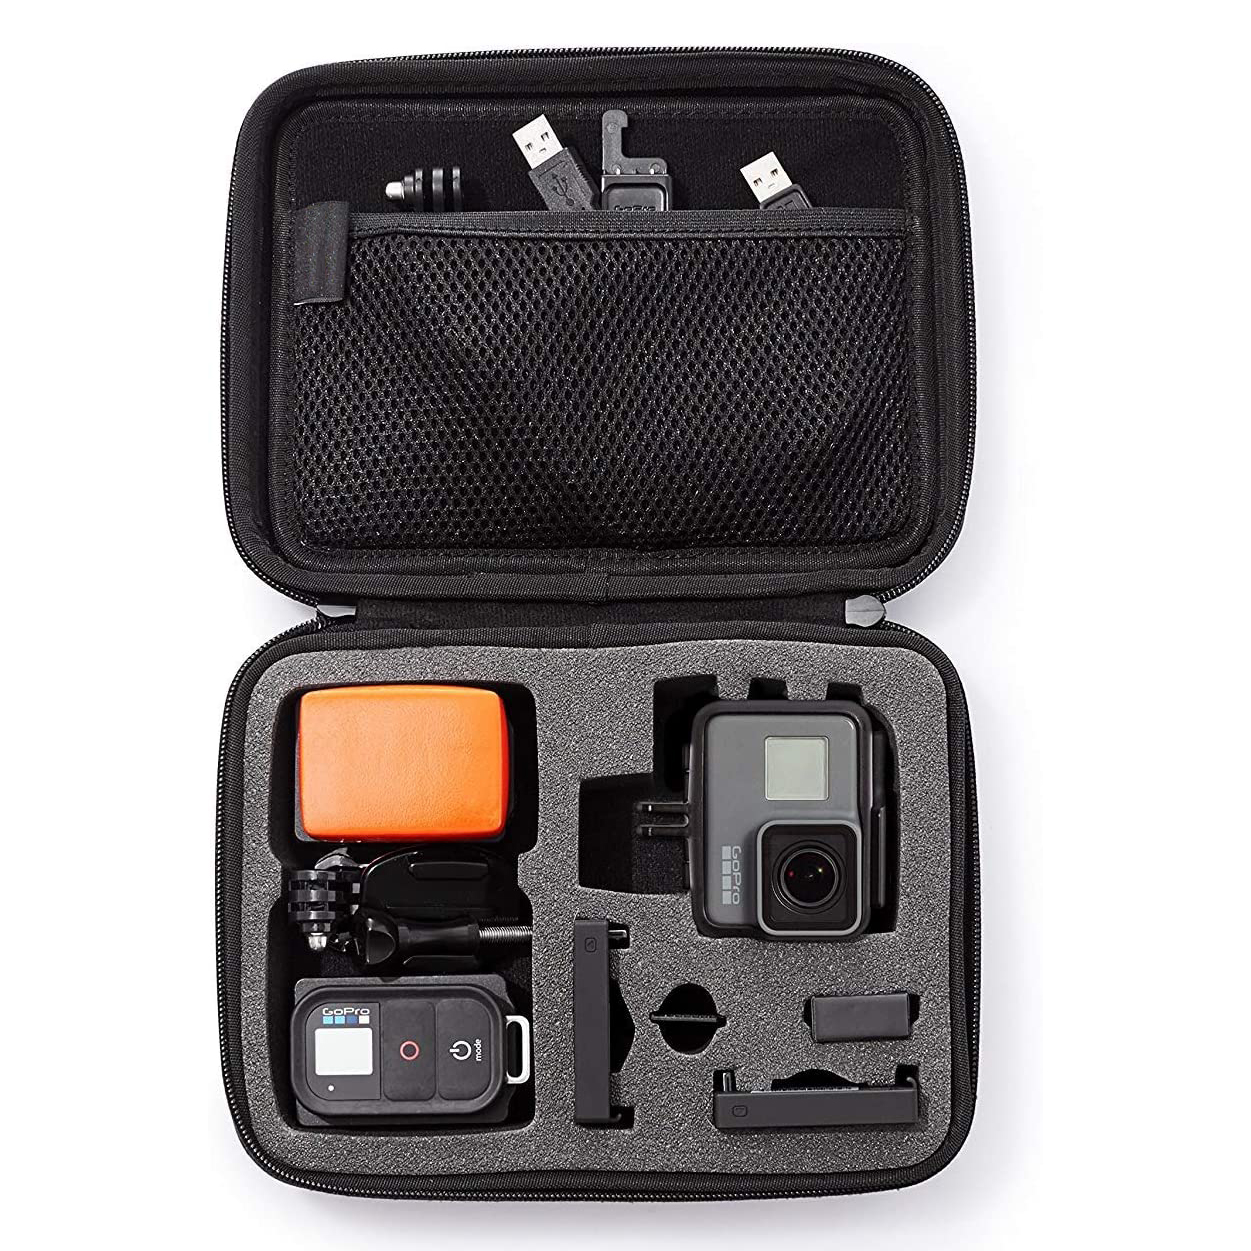 Tsy tantera-drano Eva Hard Shell Travel Case Camera Gopro Carrying Case